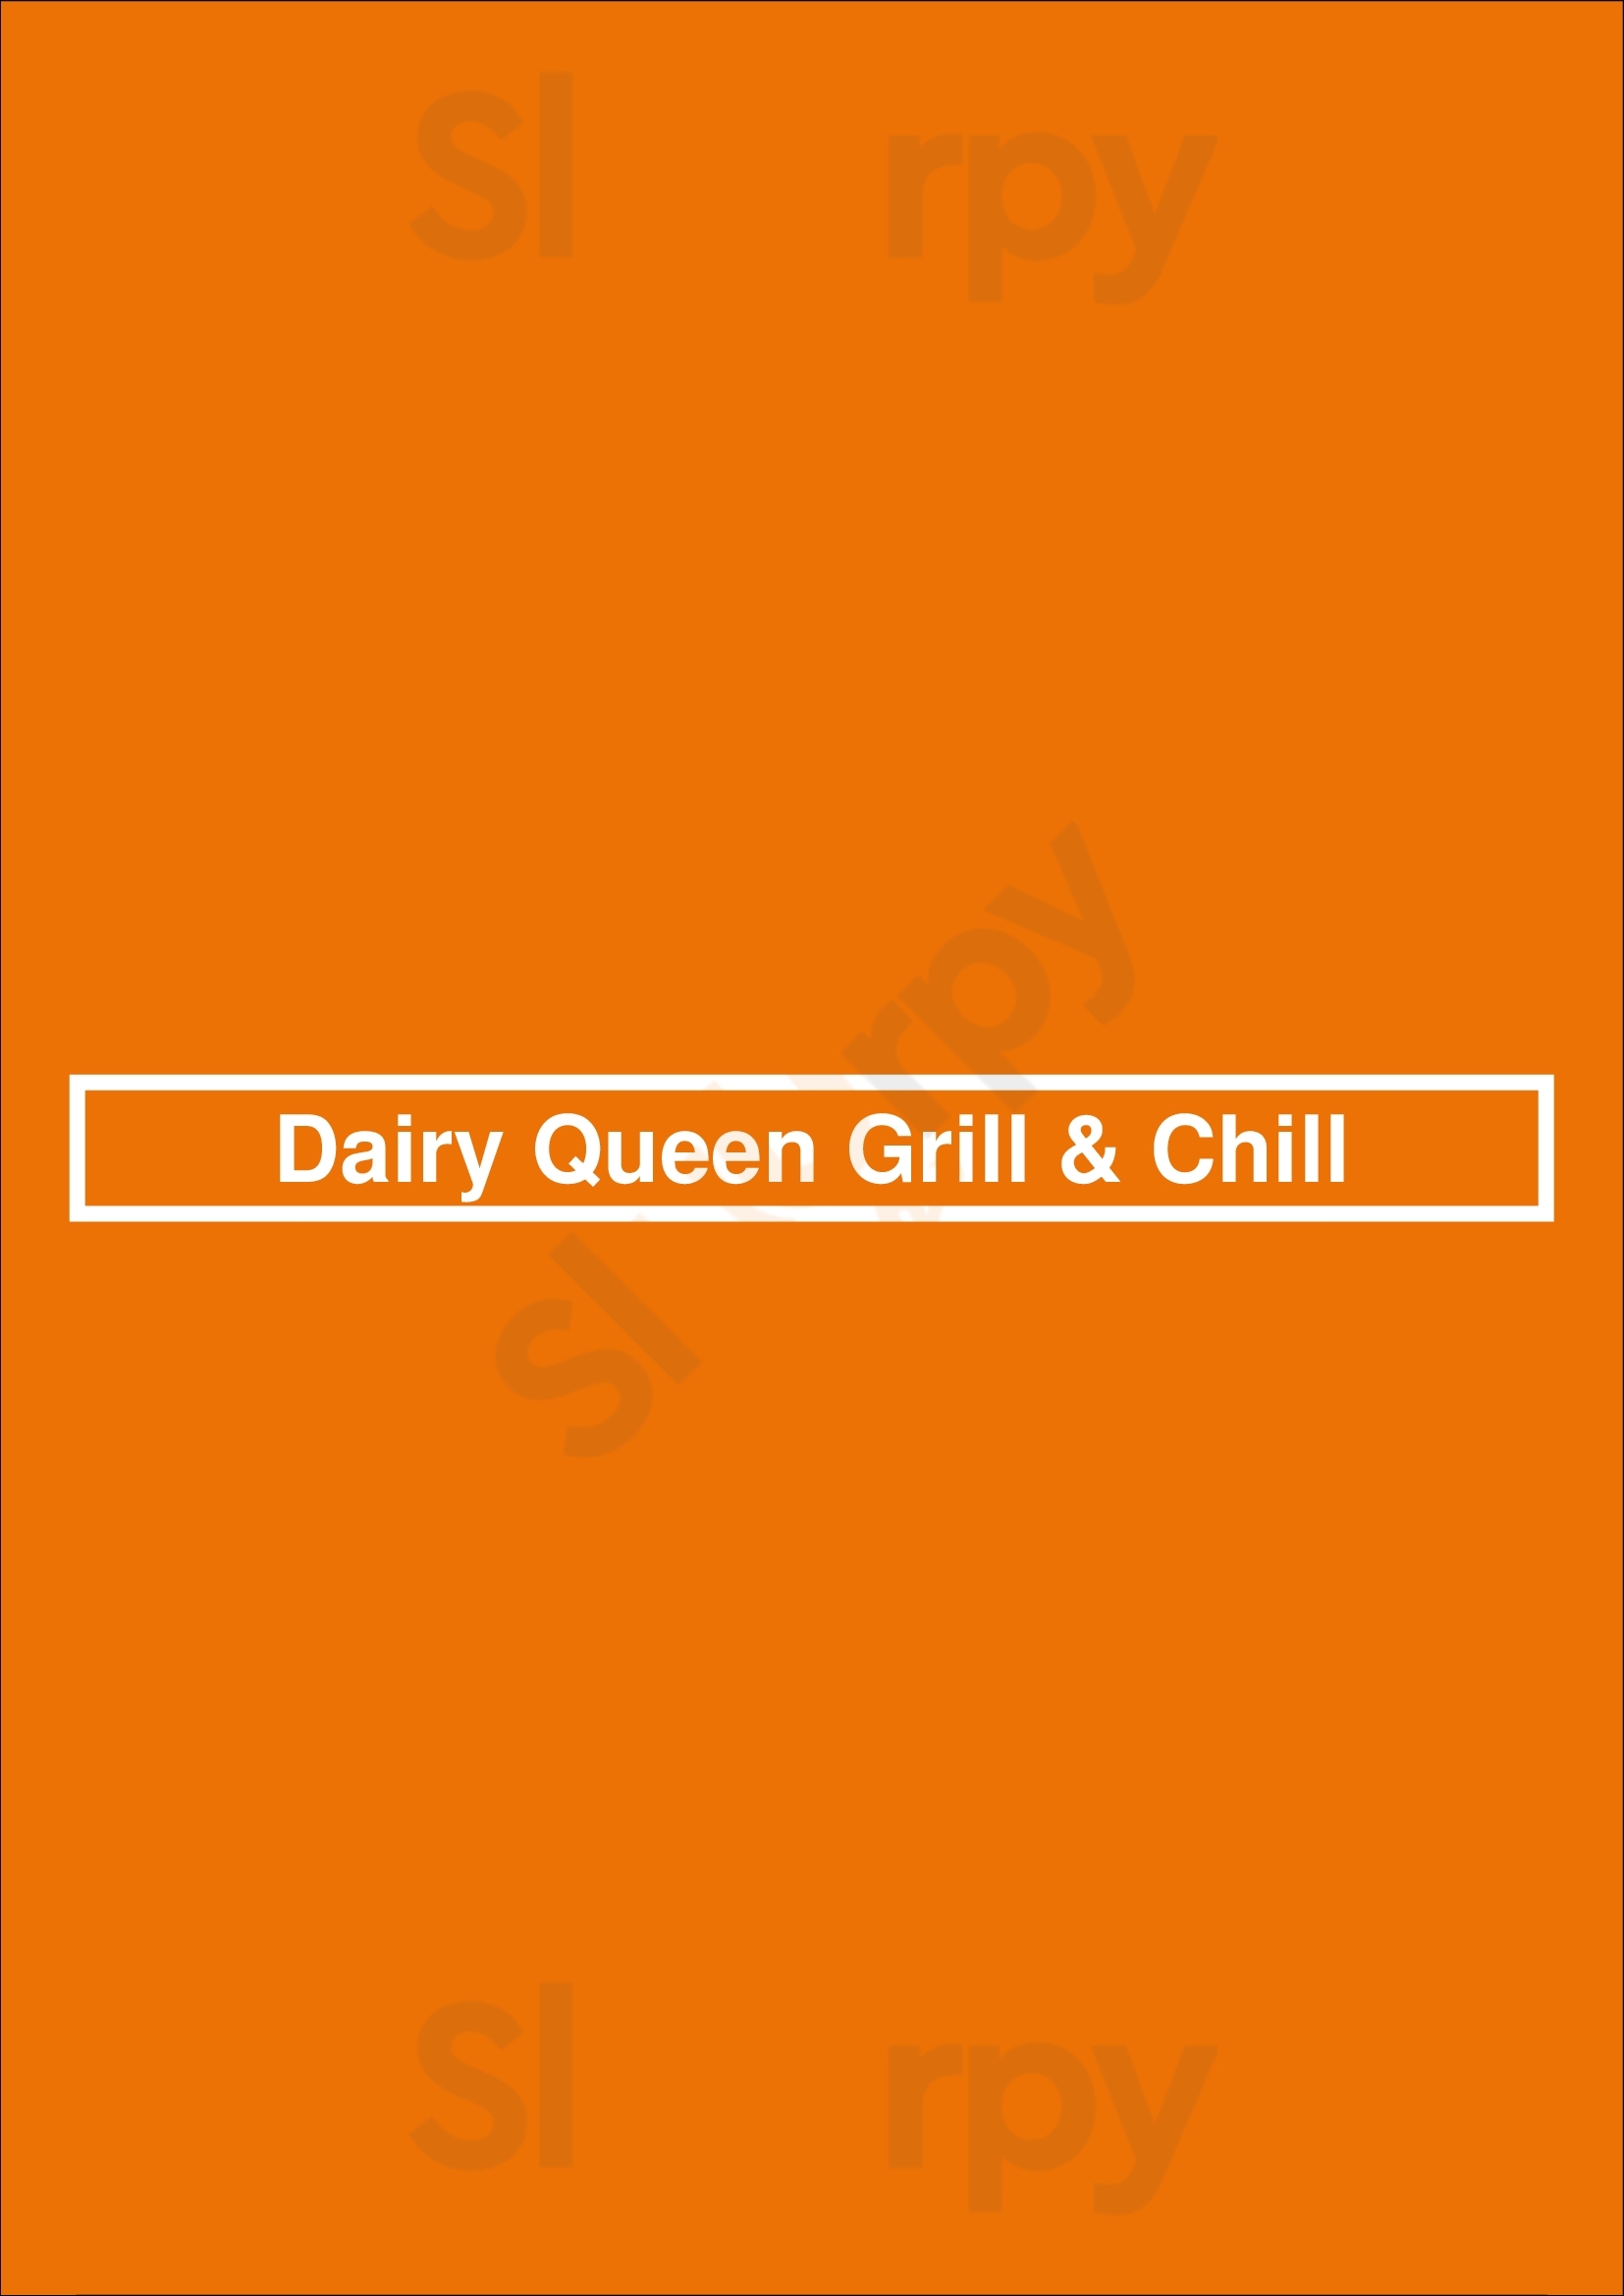 Dairy Queen Grill & Chill Atlanta Menu - 1